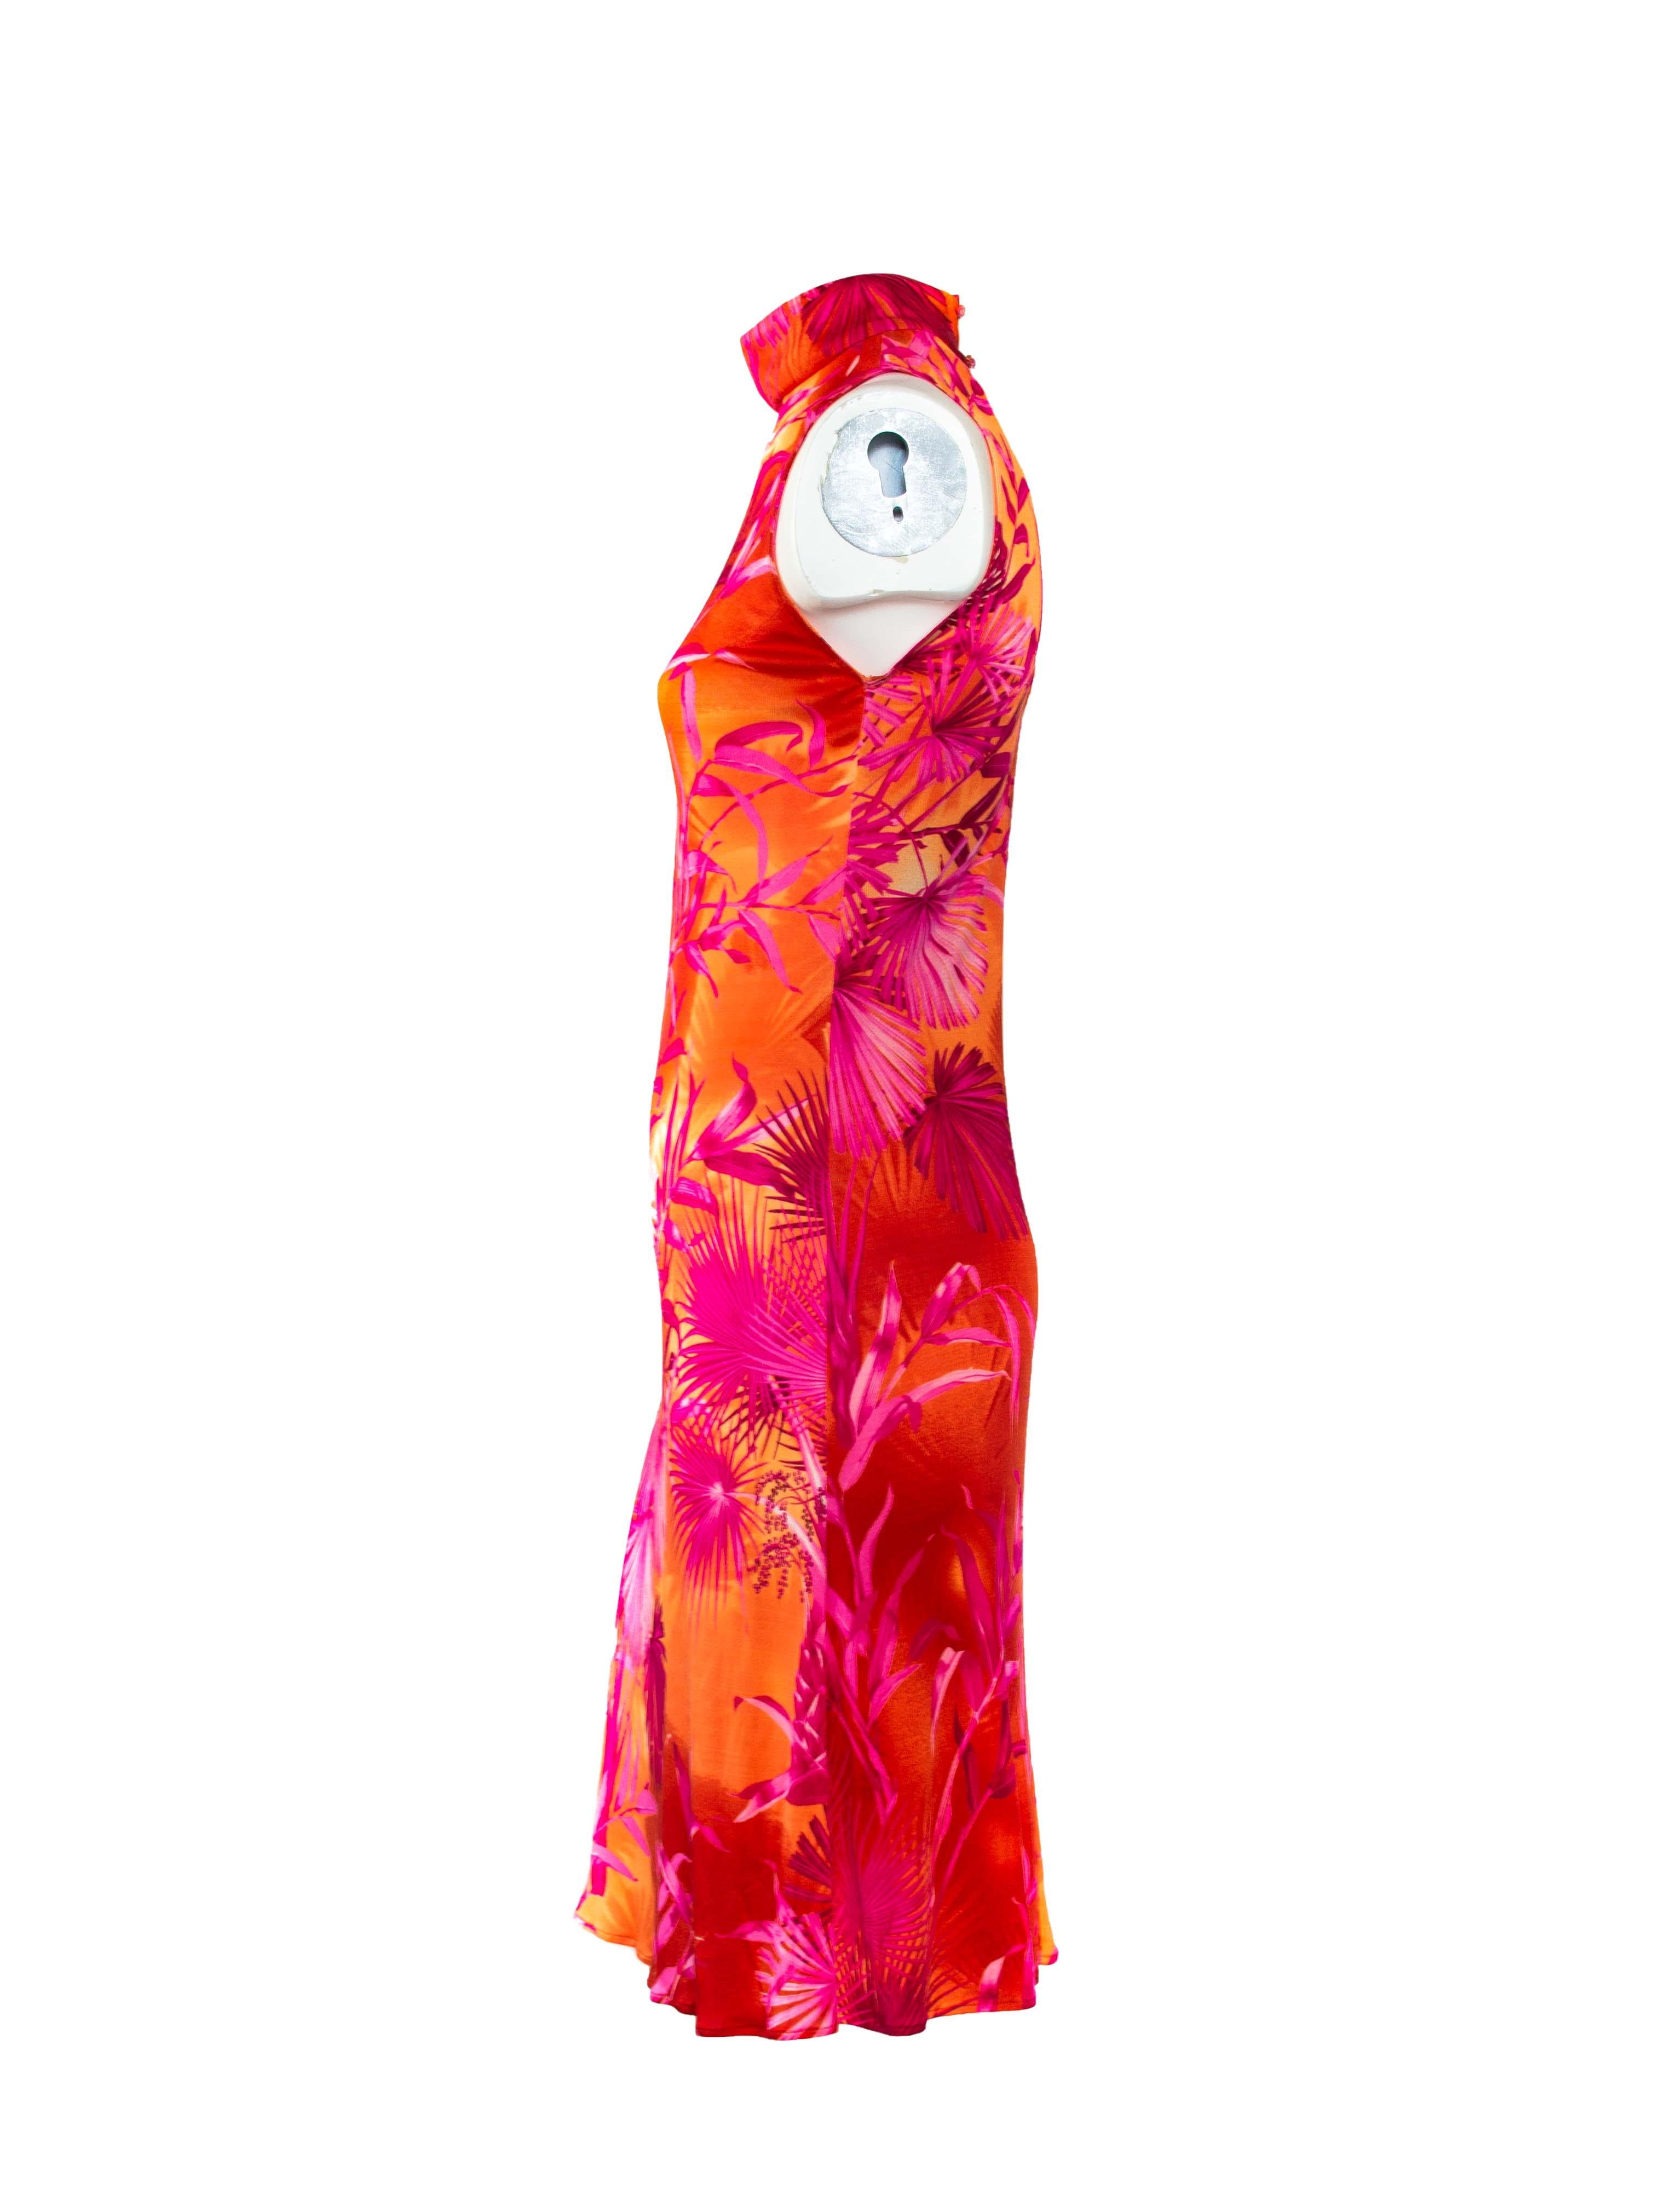 Dieses kultige Kleid mit Dschungelmuster aus der Frühjahr/Sommer-Kollektion 2000 wurde von Donatella Versace entworfen. Dieses atemberaubende Kleid hat das gleiche Muster, aber eine andere Farbkombination als das berüchtigte Dschungelkleid von JLo